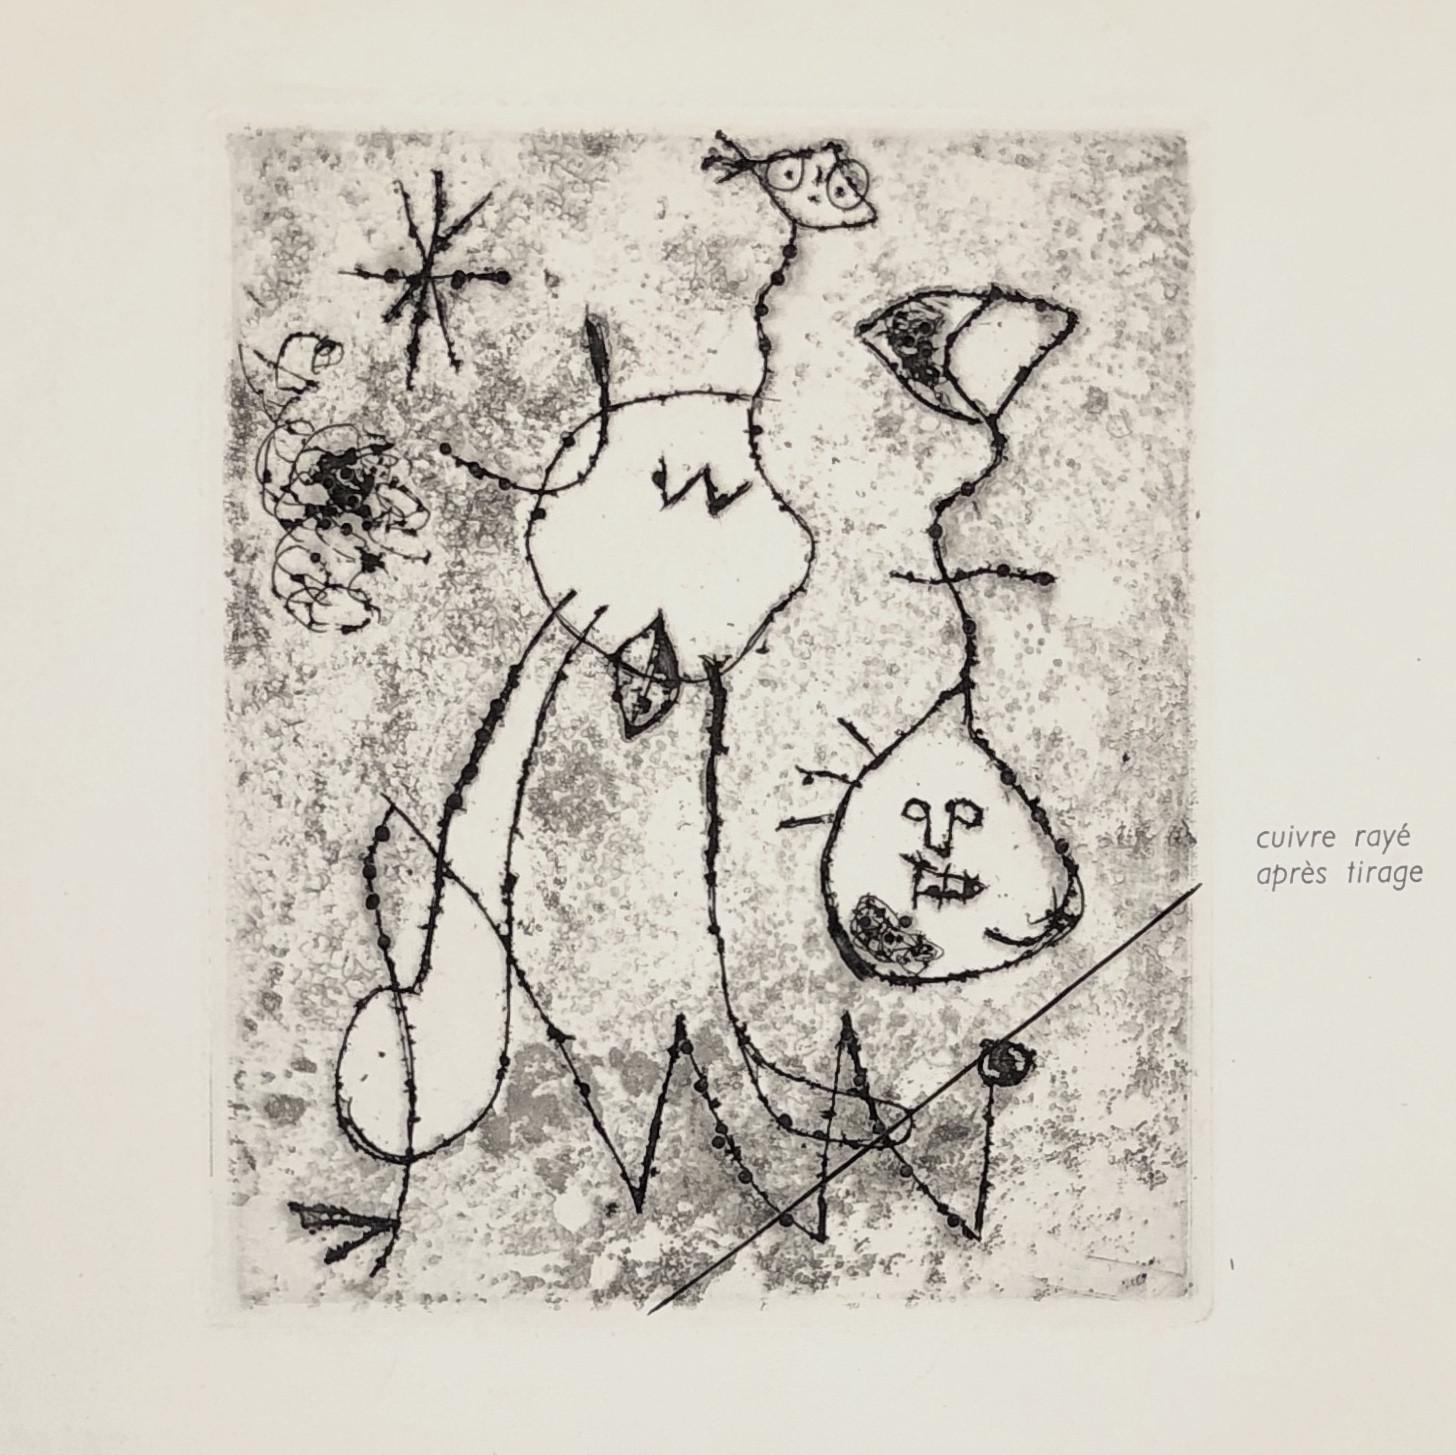 Serie V - Print by Joan Miró